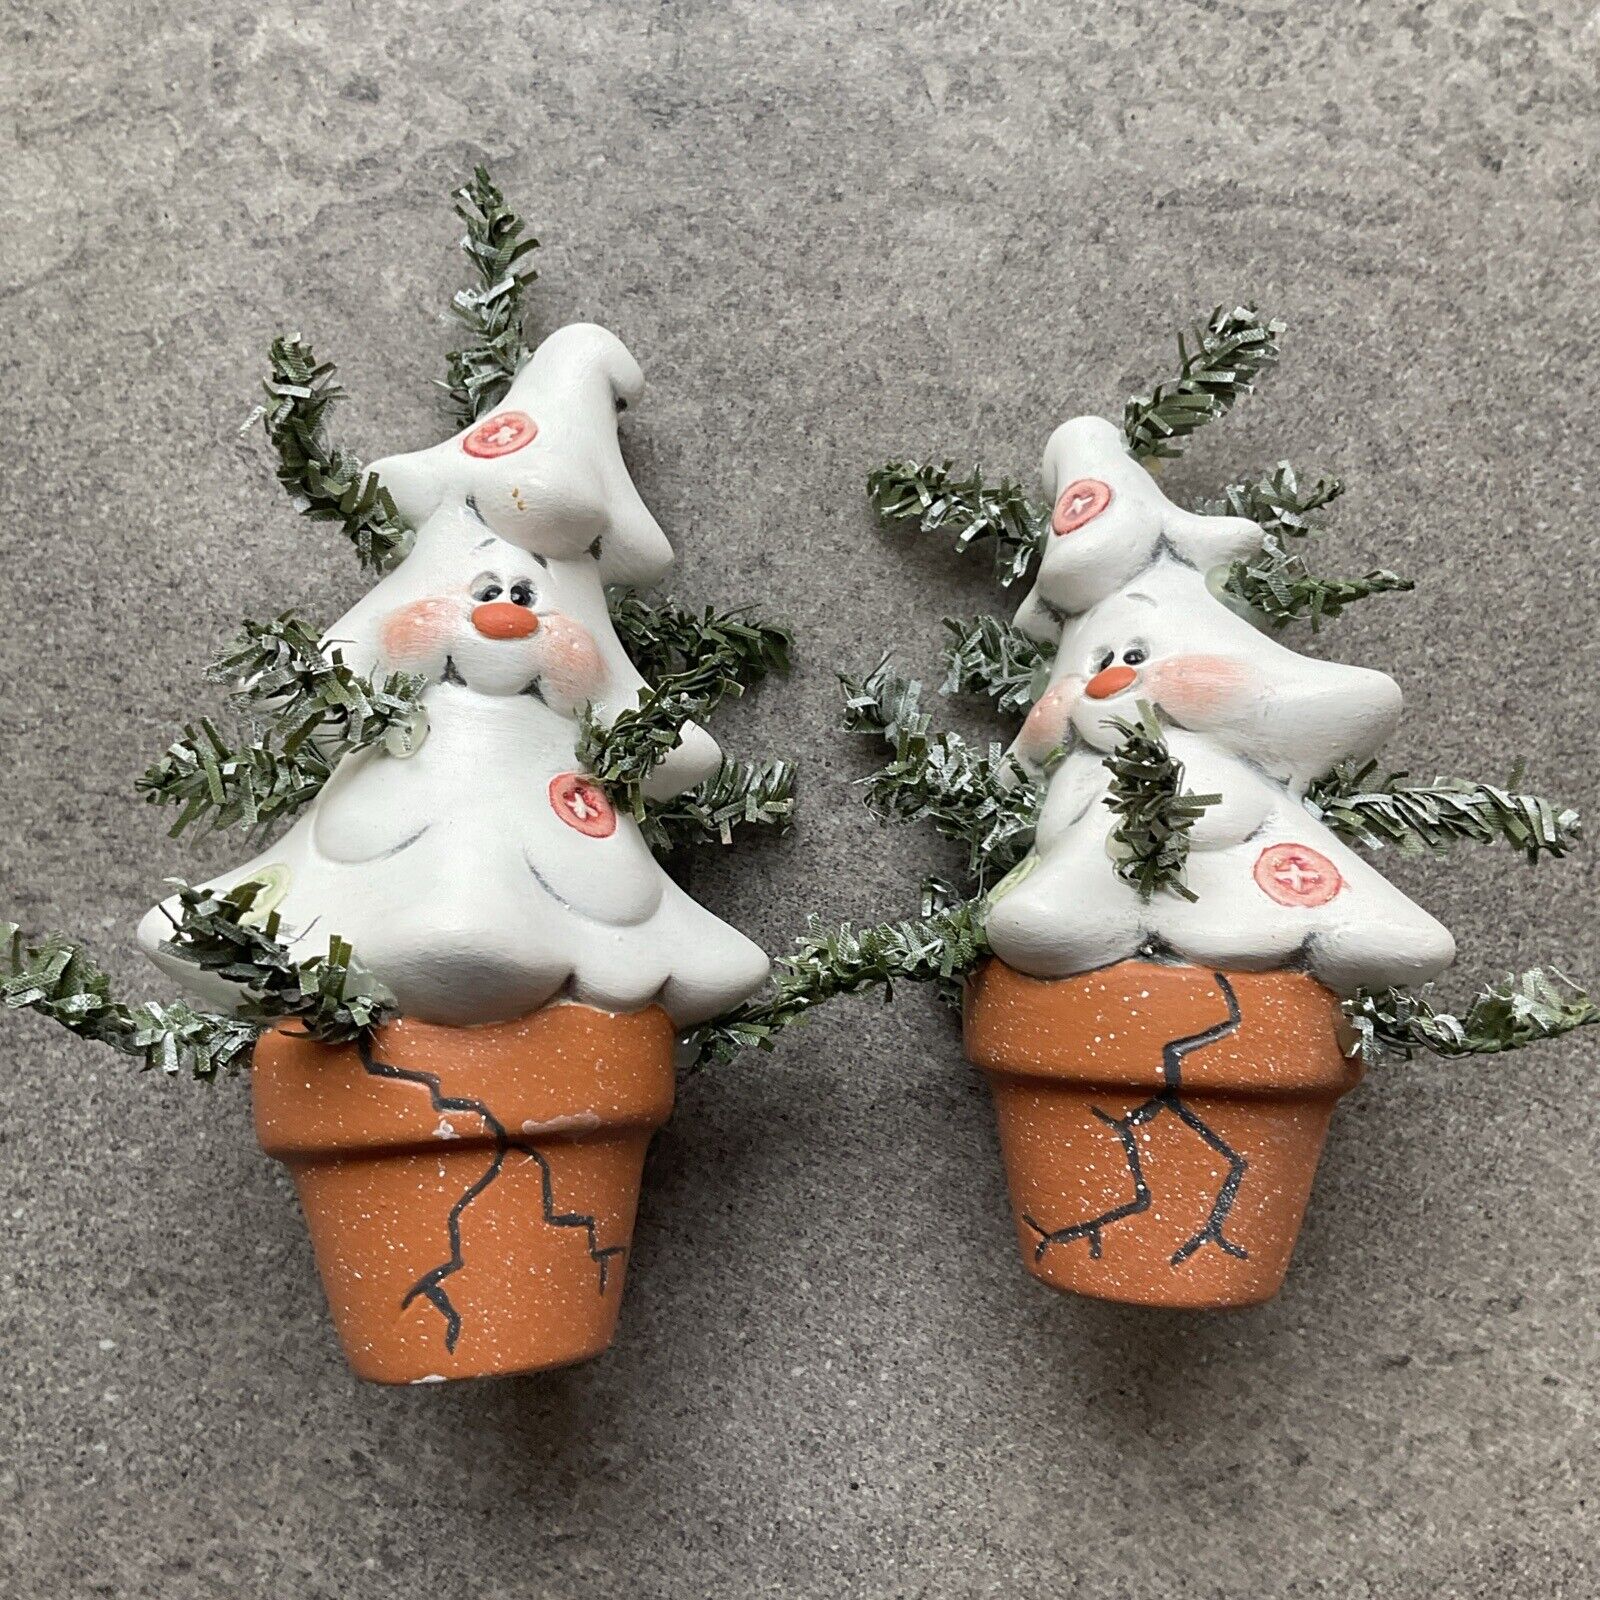 Very Cute Pair Of Ceramic Christmas Tree Crackpot Christmas Trees